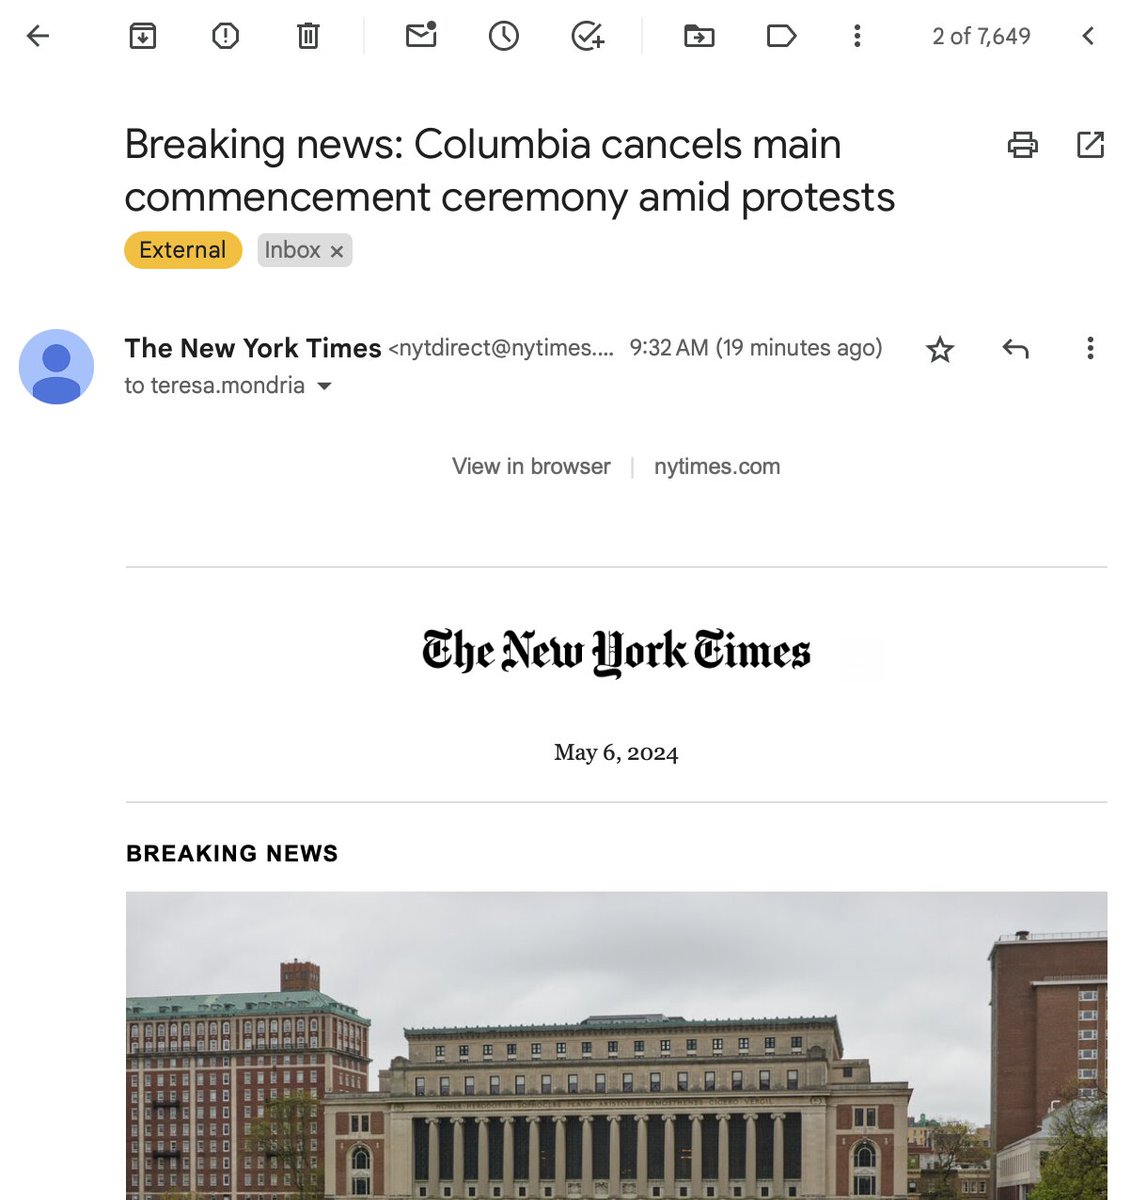 Es bastante chocante que nos enteremos de que cancelan la graduación en mi universidad por las protestas a través del @nytimes sin recibir ningún comunicado de Columbia